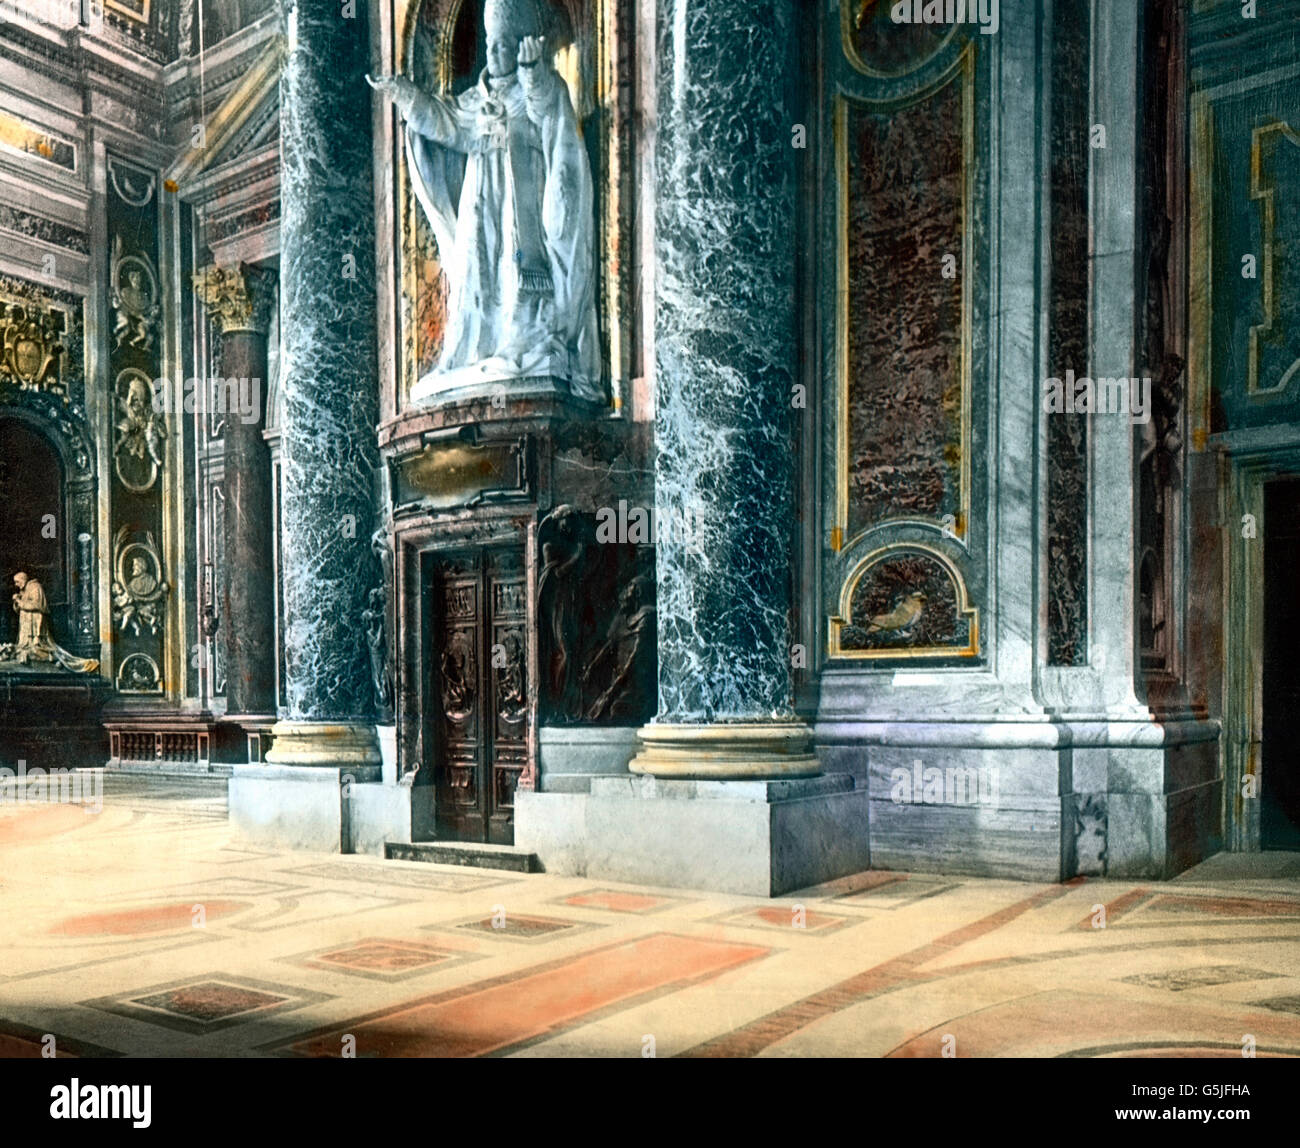 Statua von Papst Pio X. im Petersdom in Rom, Italien 1920er Jahre. La statua di Papa Pio X presso la cattedrale di San Pietro a Roma, Italia, 1920s. Foto Stock